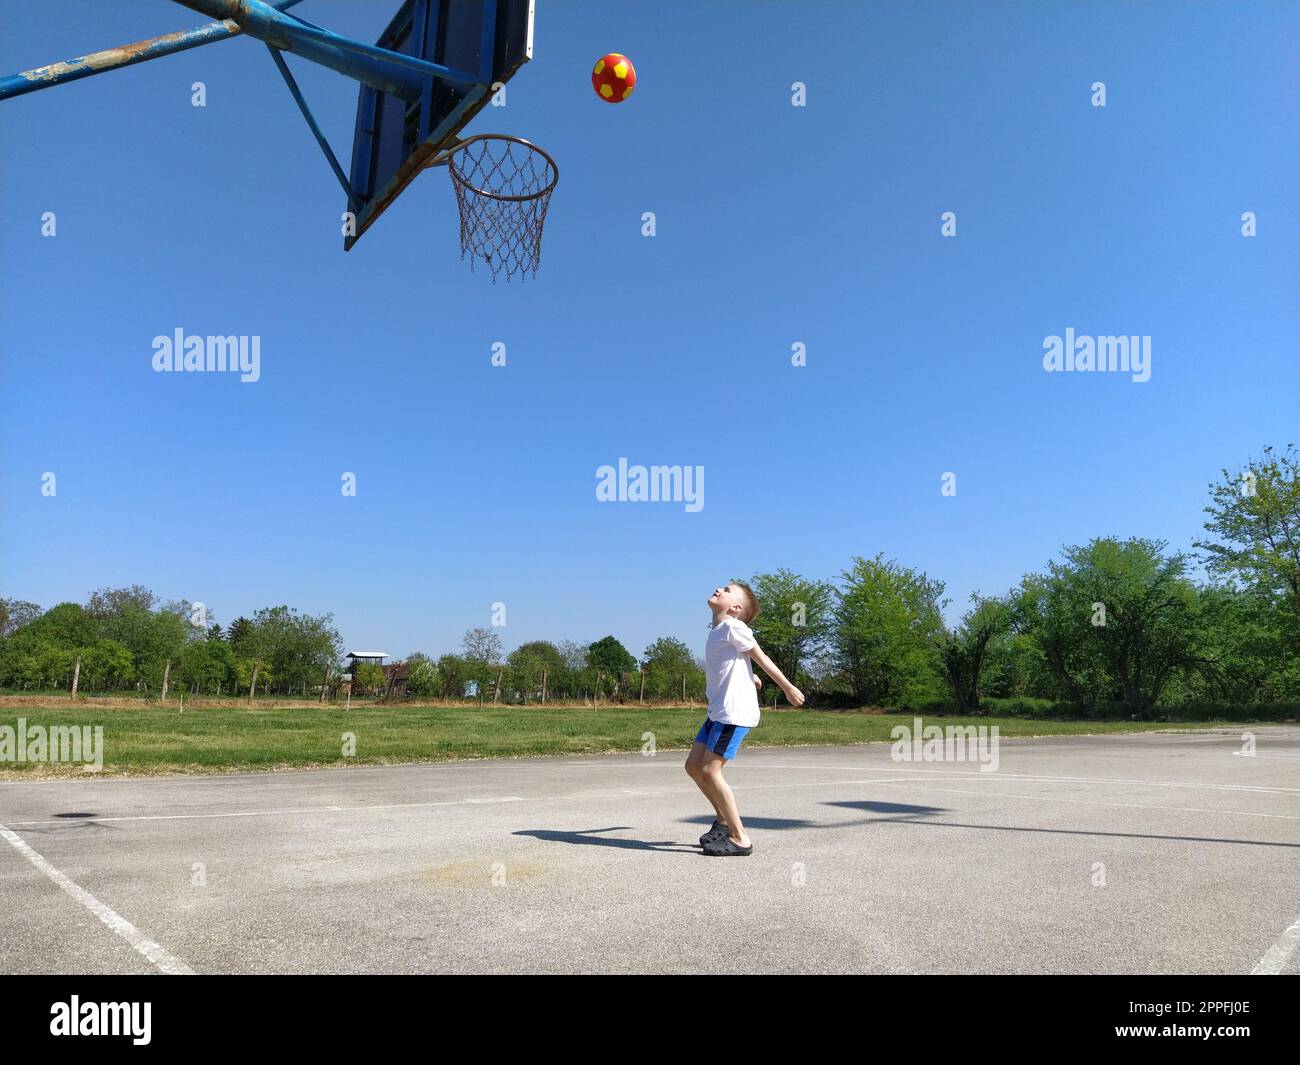 Der Junge wirft den Ball ins Basketballnetz. Das Kind spielt mit einem Ball auf dem Spielplatz. Geben Sie Platz für Text frei. Blauer Himmel im Hintergrund. Ein blondes Kind. Stockfoto